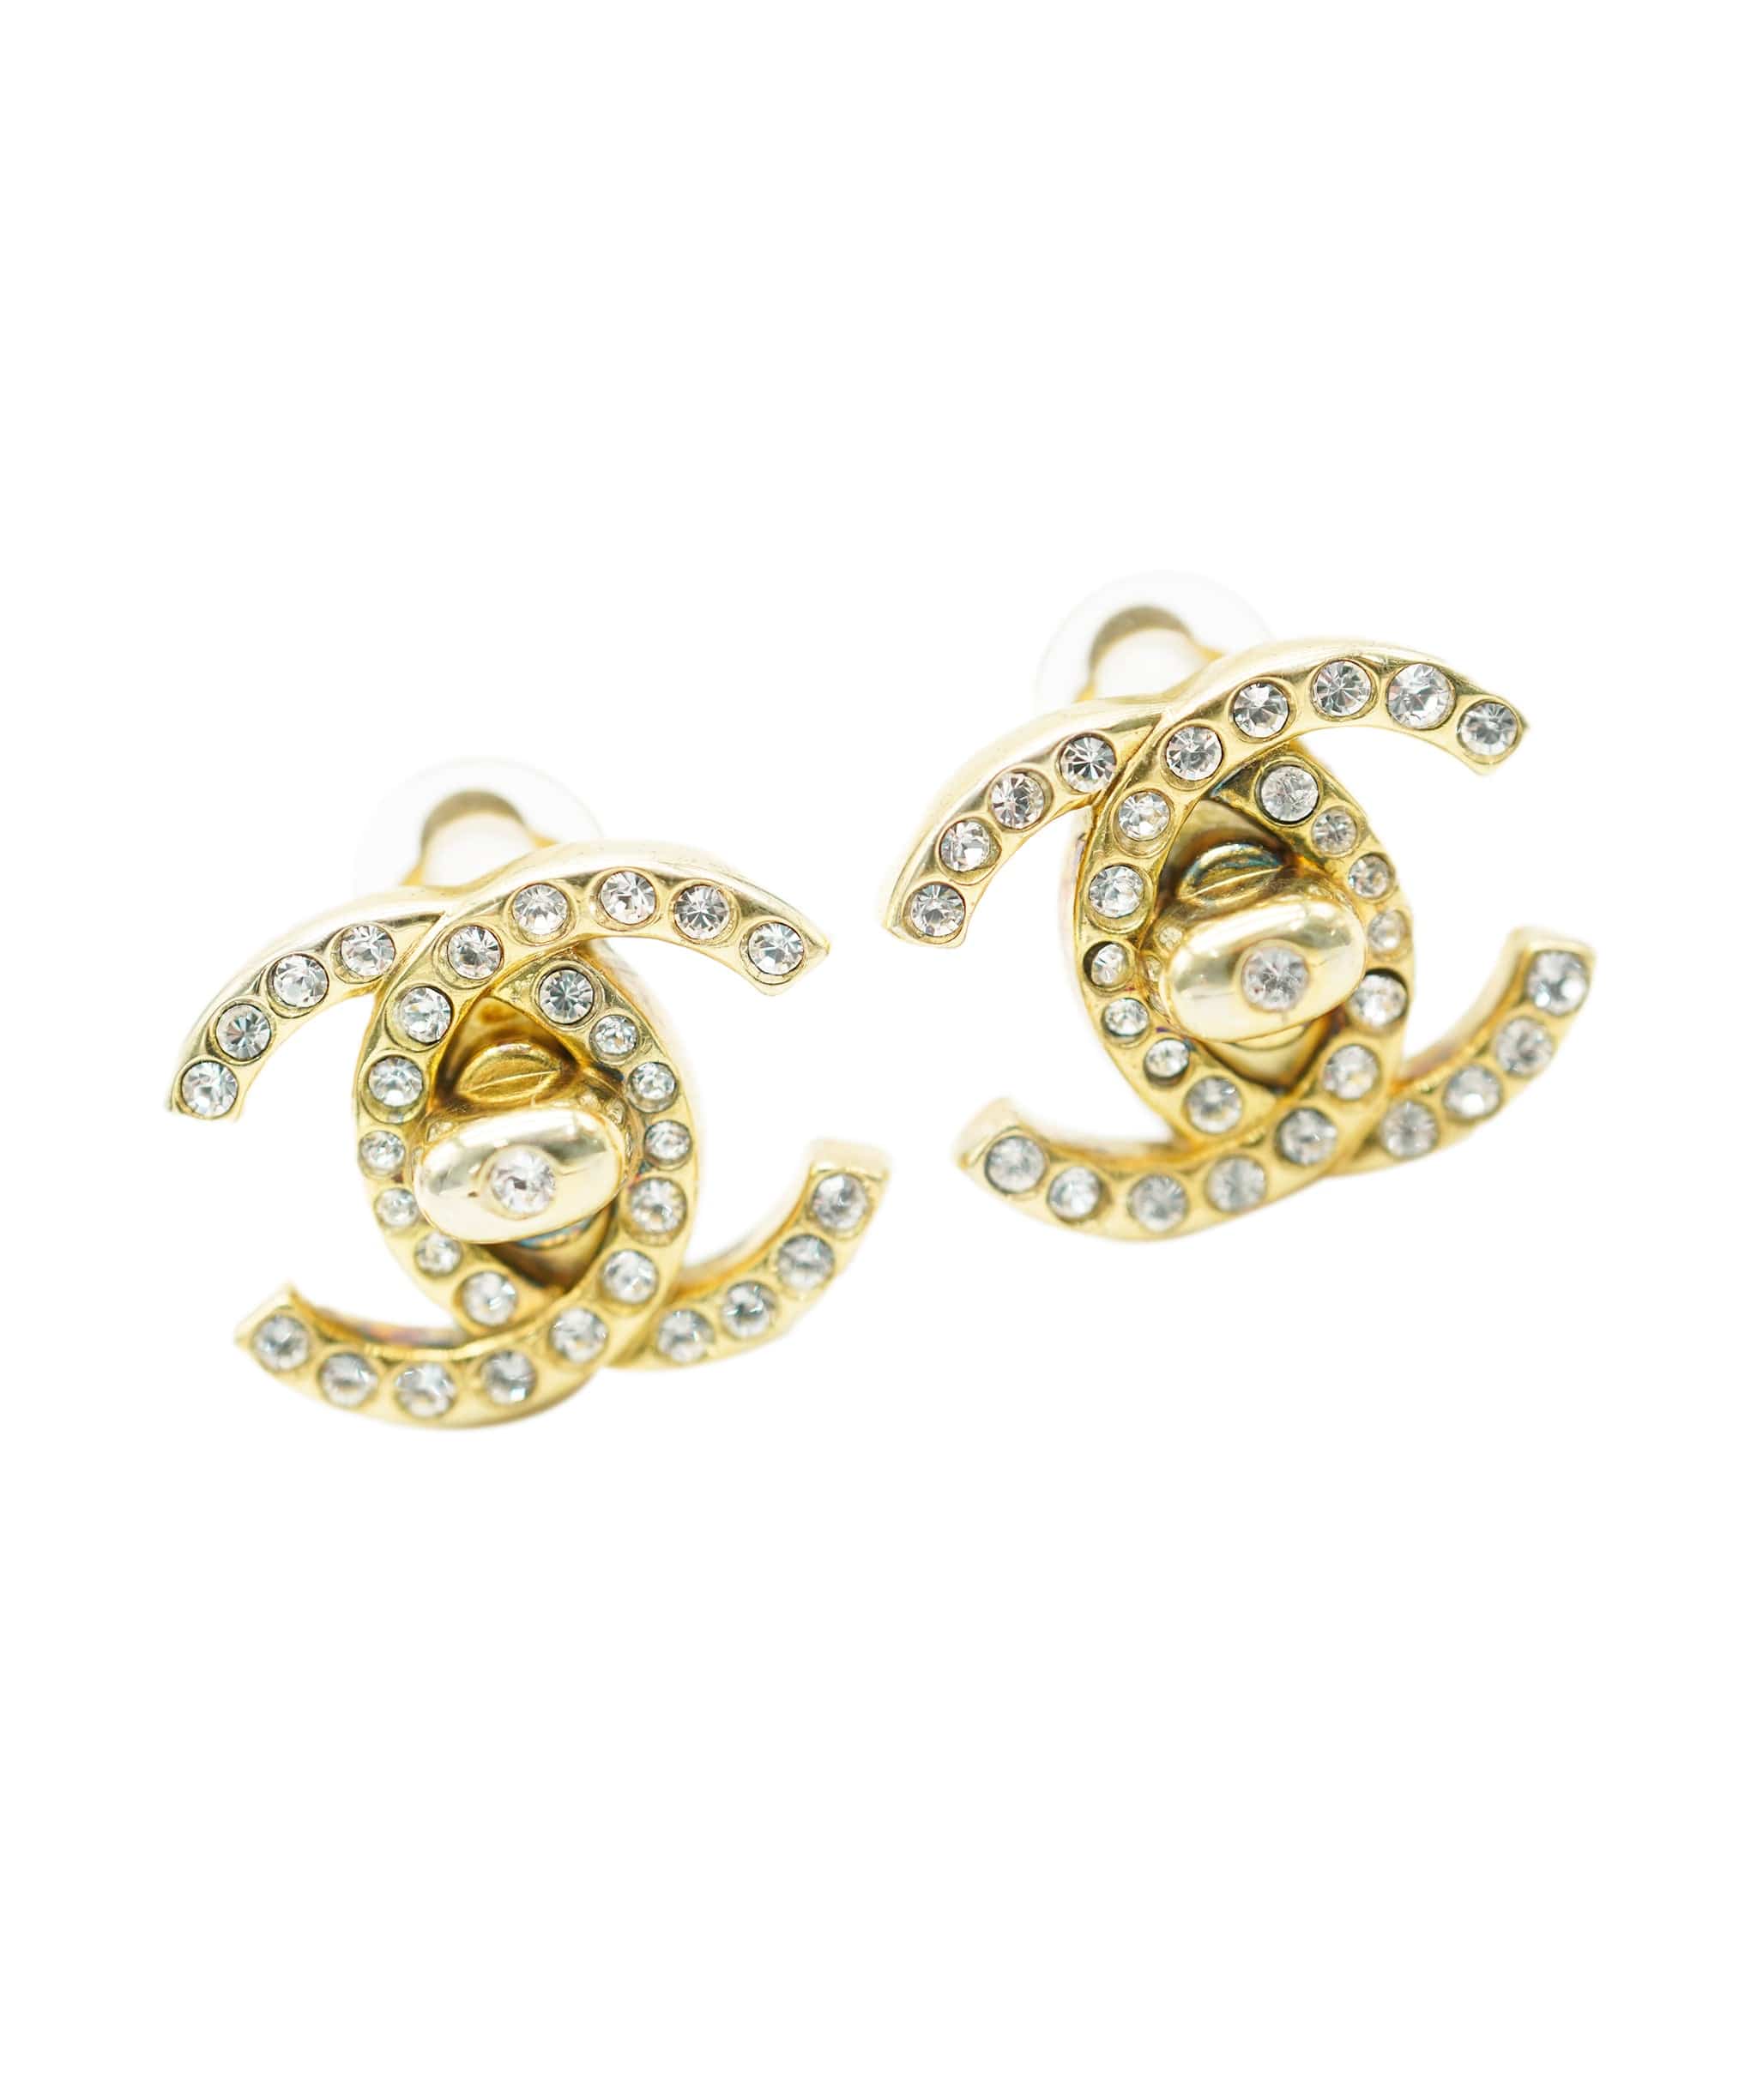 Cartier Chanel diamante CC turnlock earrings AJL0182